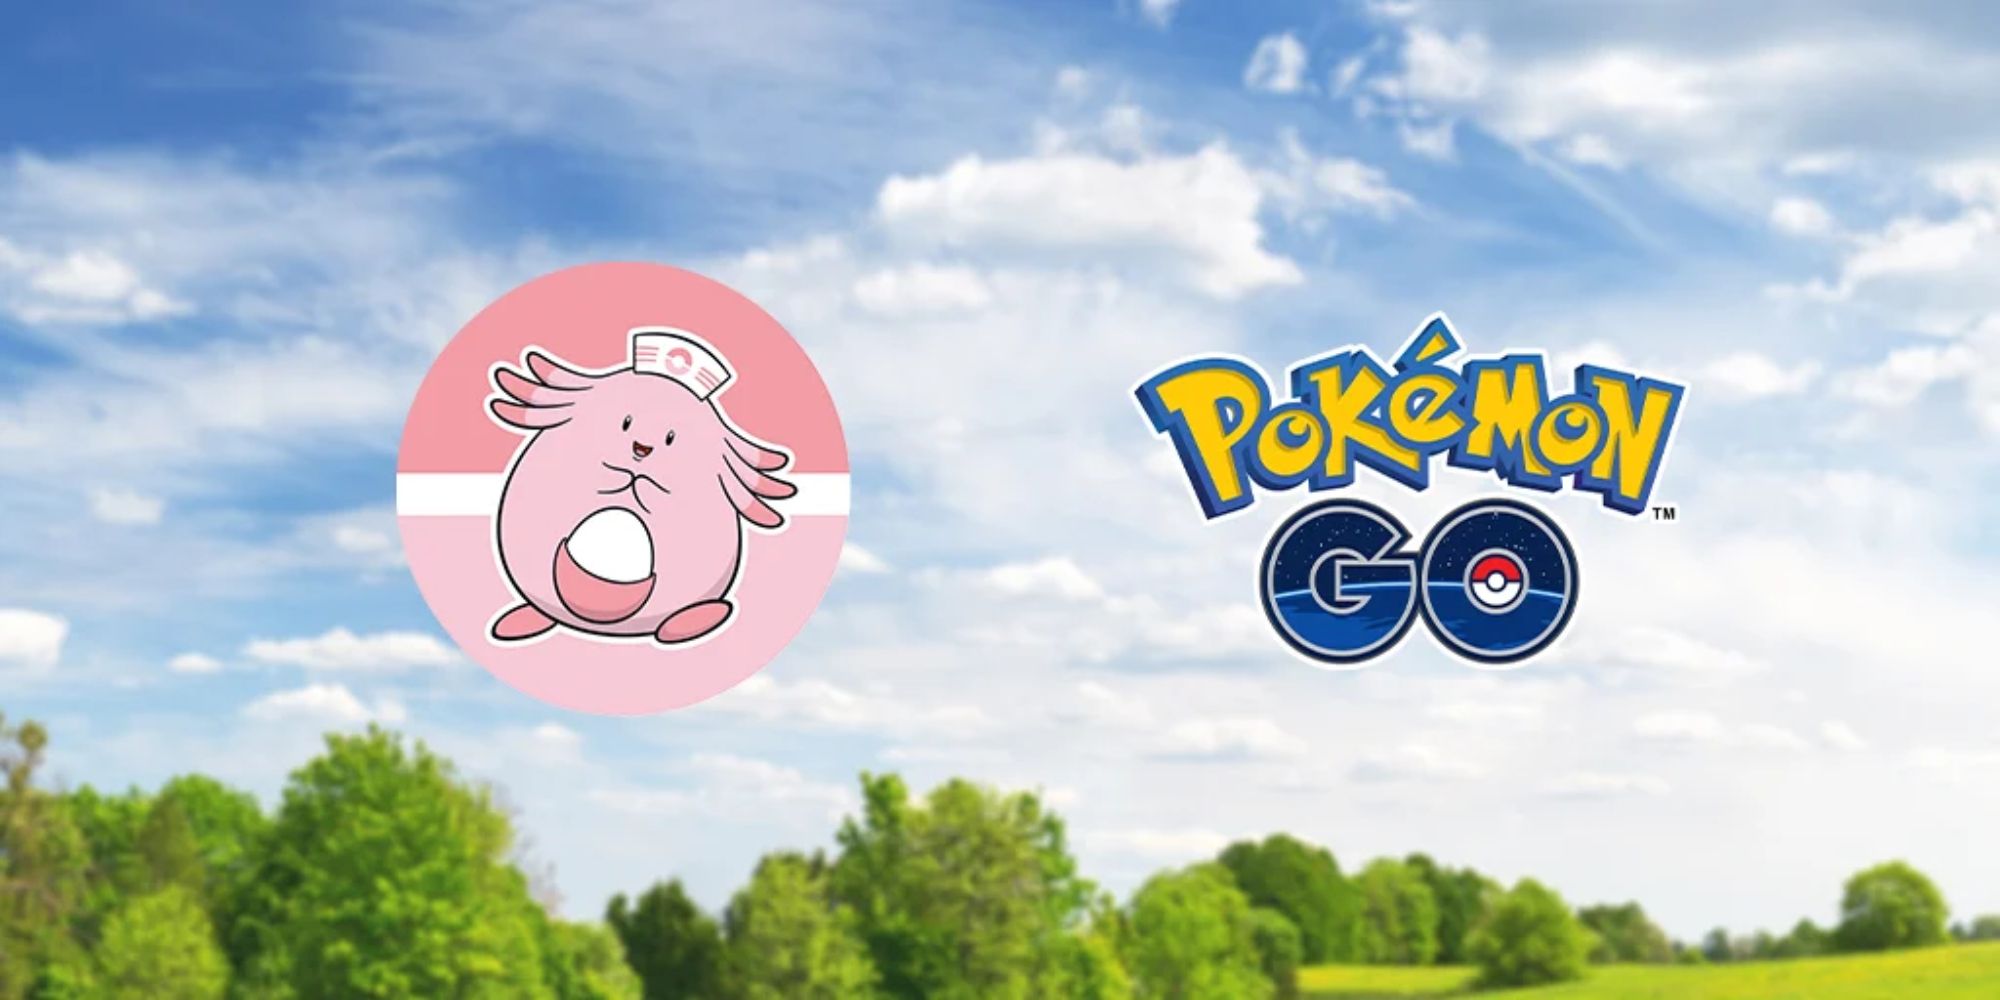 Pokemon Go logo next to a Chansey